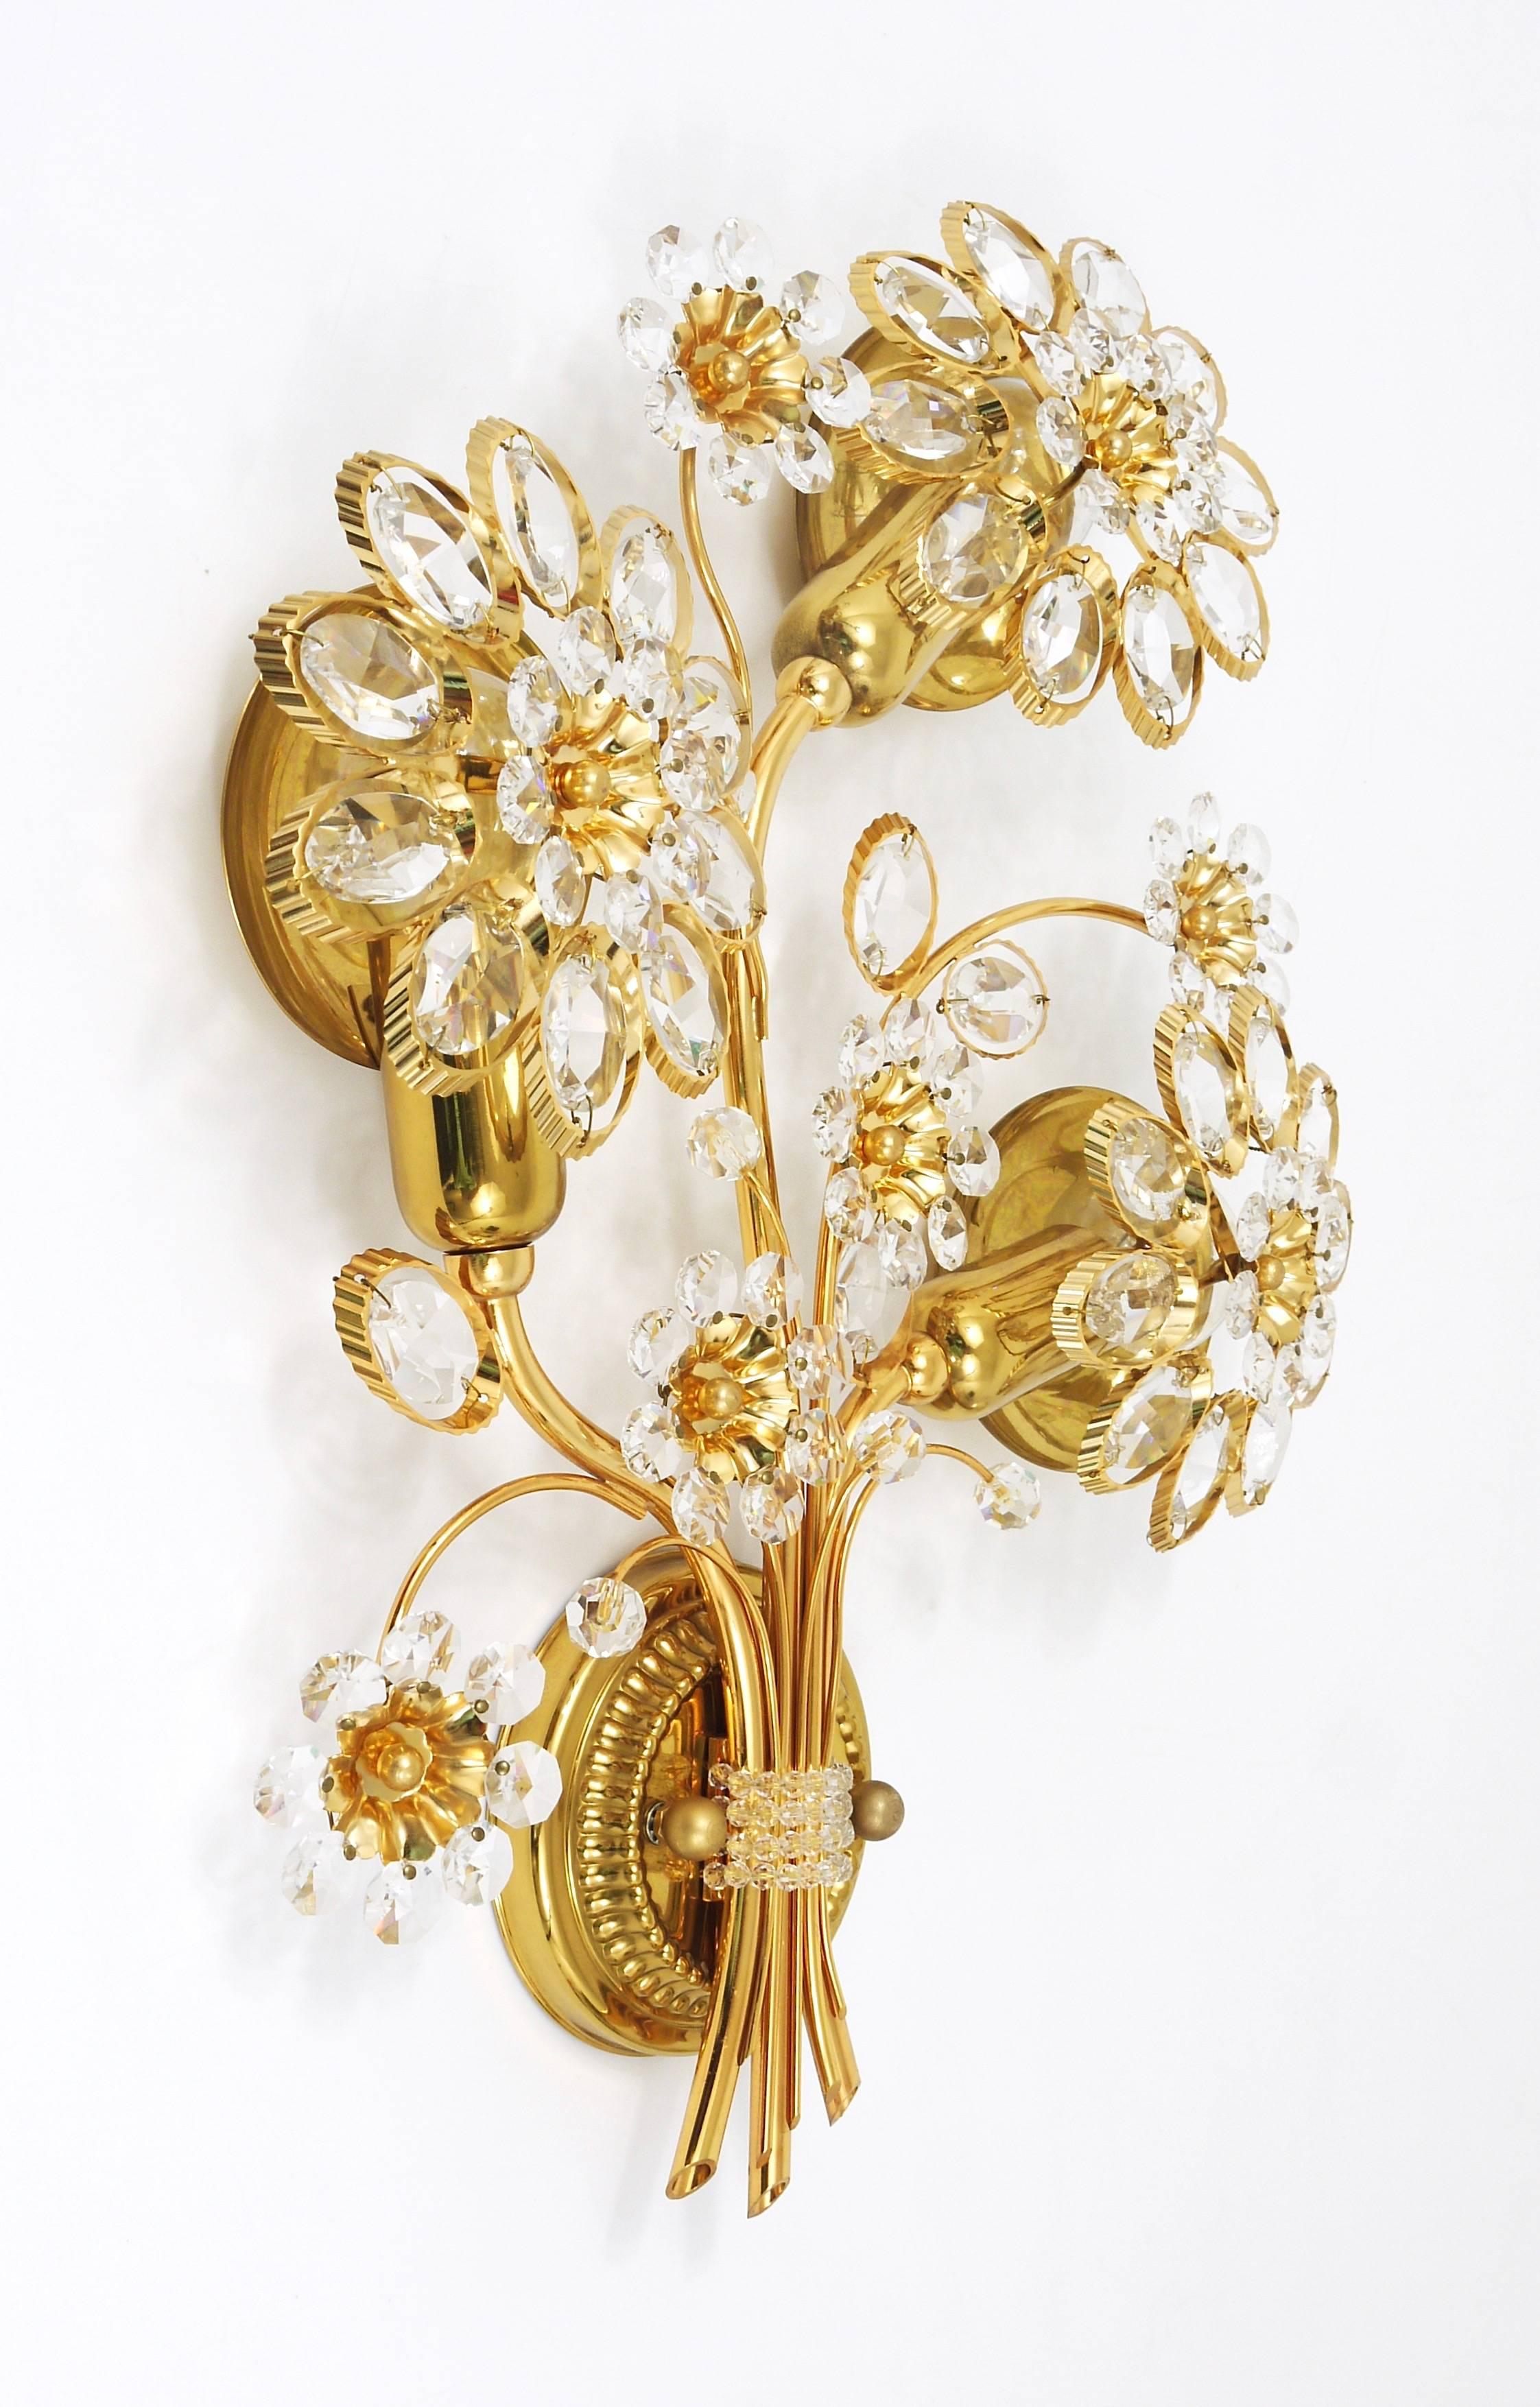 Ein schöner und großer Blumenleuchter, hergestellt in den 1970er Jahren von Palwa, Deutschland. Hergestellt aus vergoldetem Messing mit Blütenblättern aus Kristallglas. In ausgezeichnetem Zustand. Wir bieten weitere passende Palwa-Leuchter, Spiegel